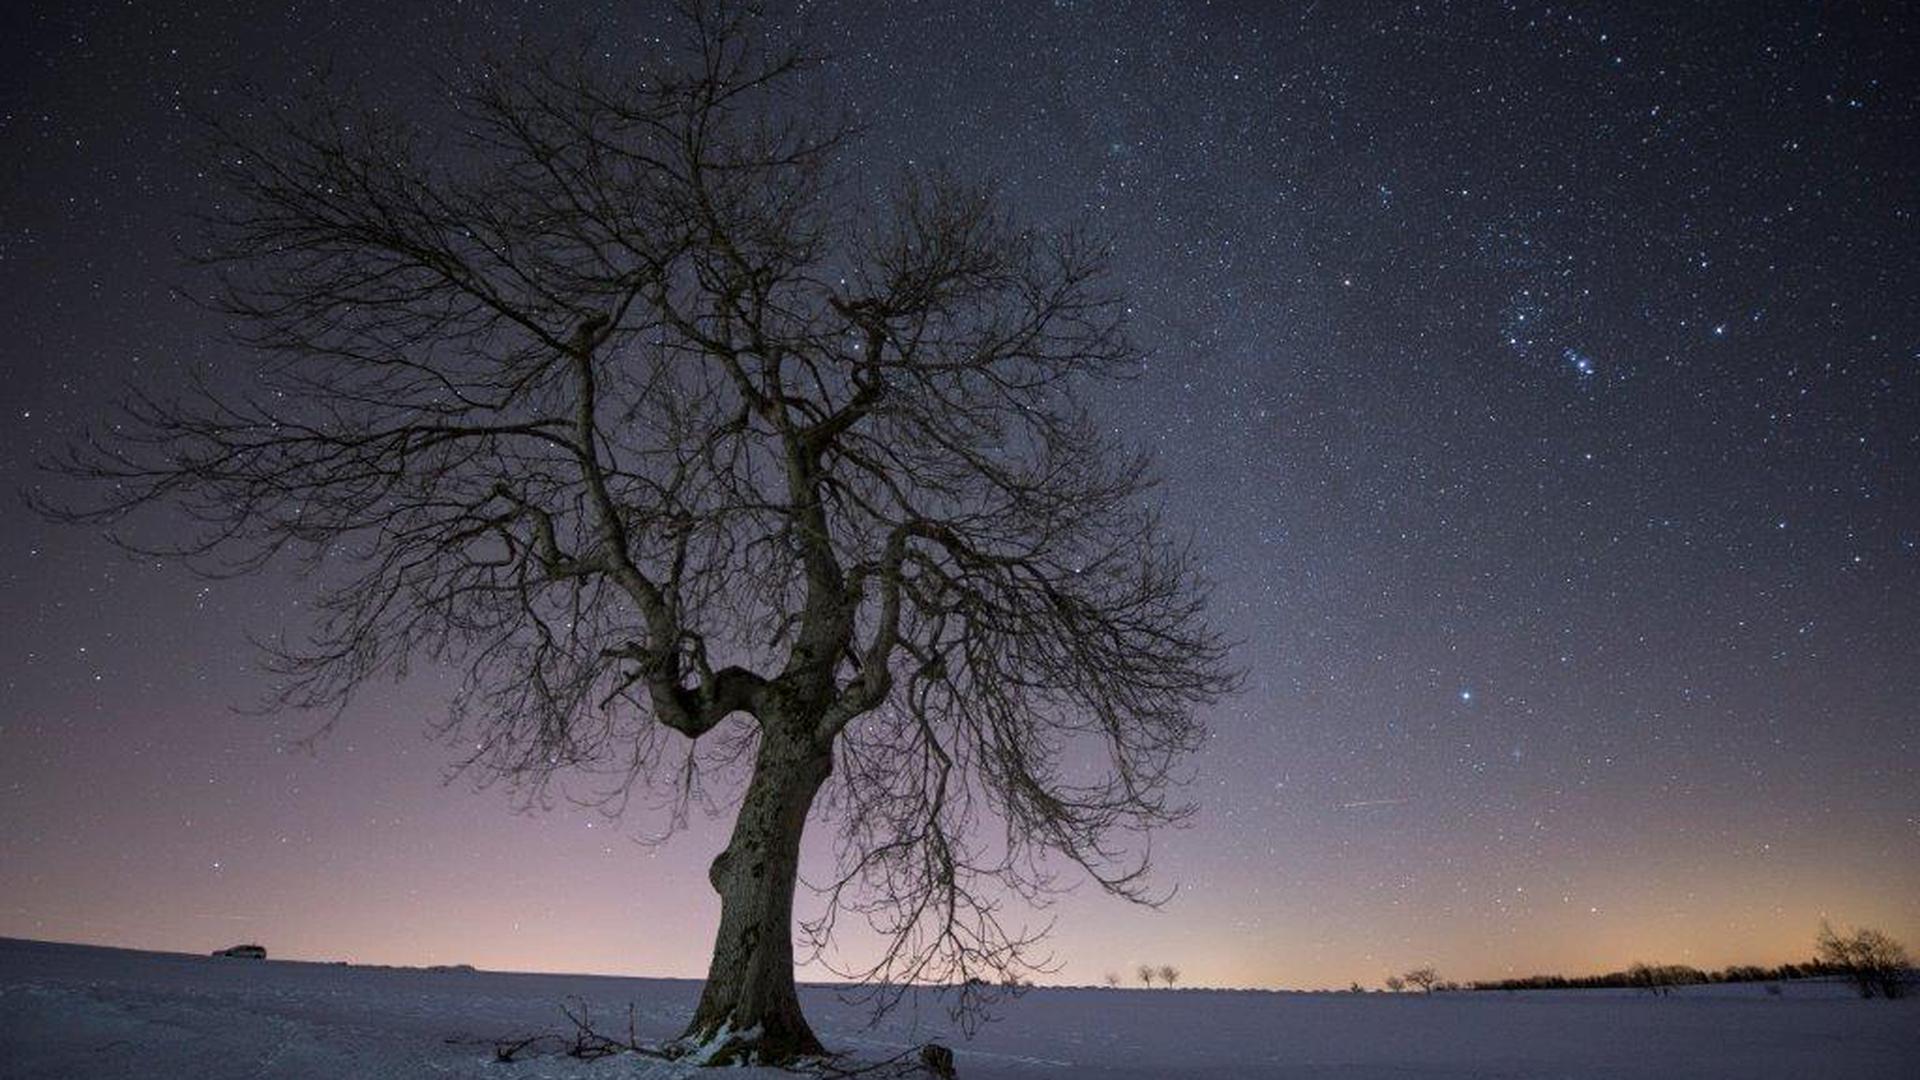 Der Himmel mit unzähligen Sternen übersät, die Milchstraße deutlich erkennbar: Ein Beispiel dafür, wie Lichtverschmutzung erfolgreich reduziert werden kann, um die natürliche Dunkelheit der Nacht zurückzuholen. Das Bild wurde aufgenommen auf der Hohen Geba im Sternenpark Rhön (östlich von Fulda in Hessen).